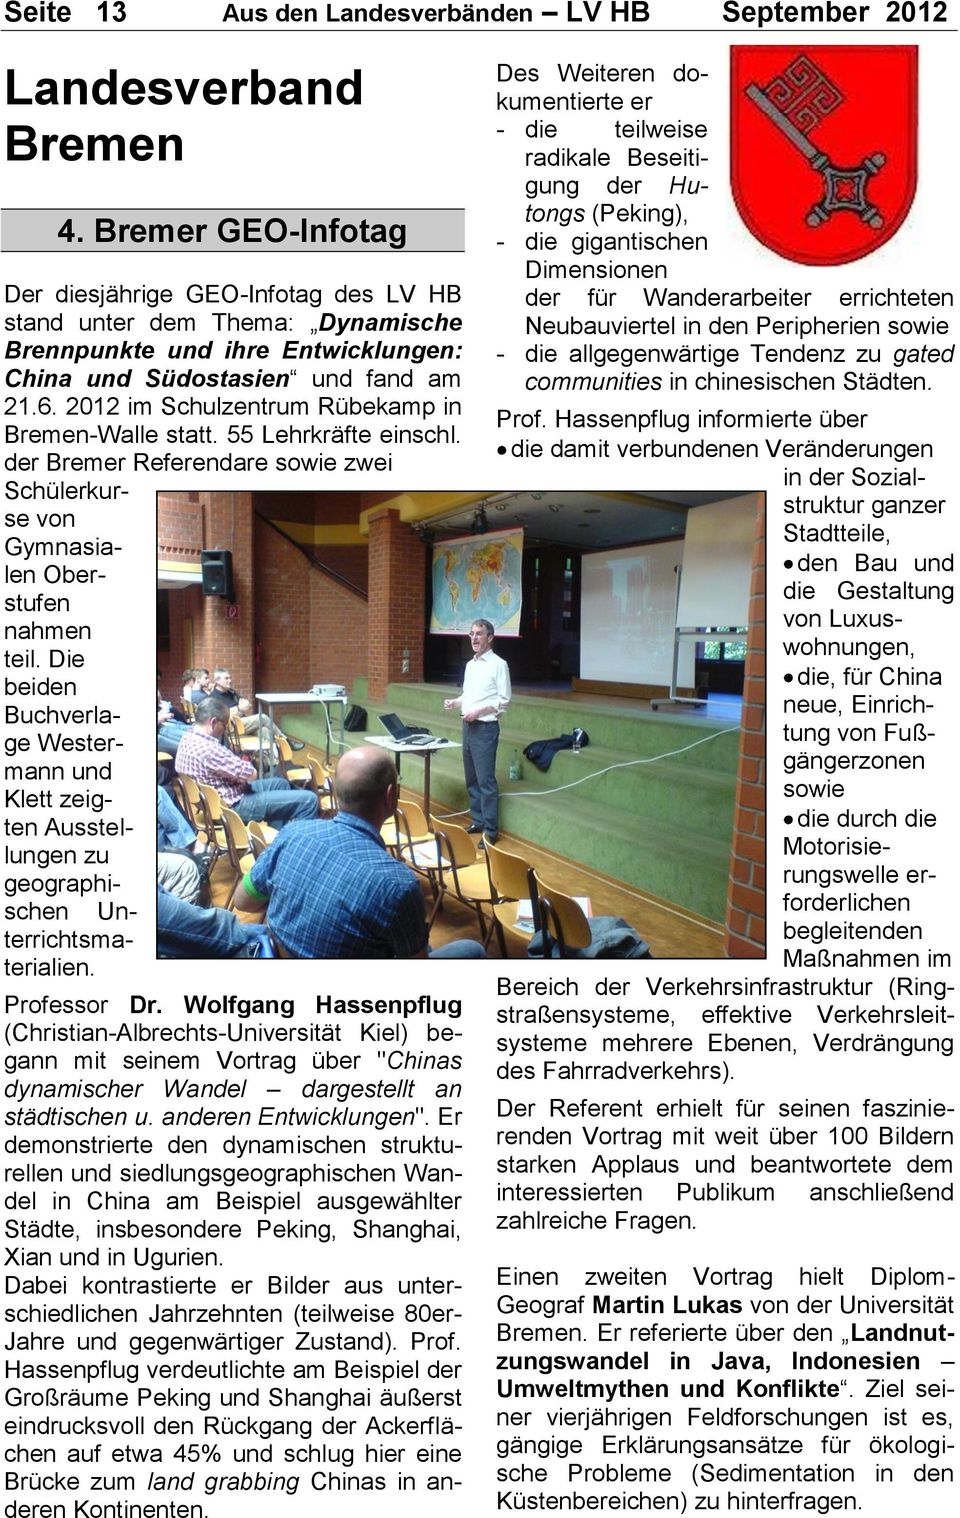 2012 im Schulzentrum Rübekamp in Bremen-Walle statt. 55 Lehrkräfte einschl. der Bremer Referendare sowie zwei Schülerkurse von Gymnasialen Oberstufen nahmen teil.